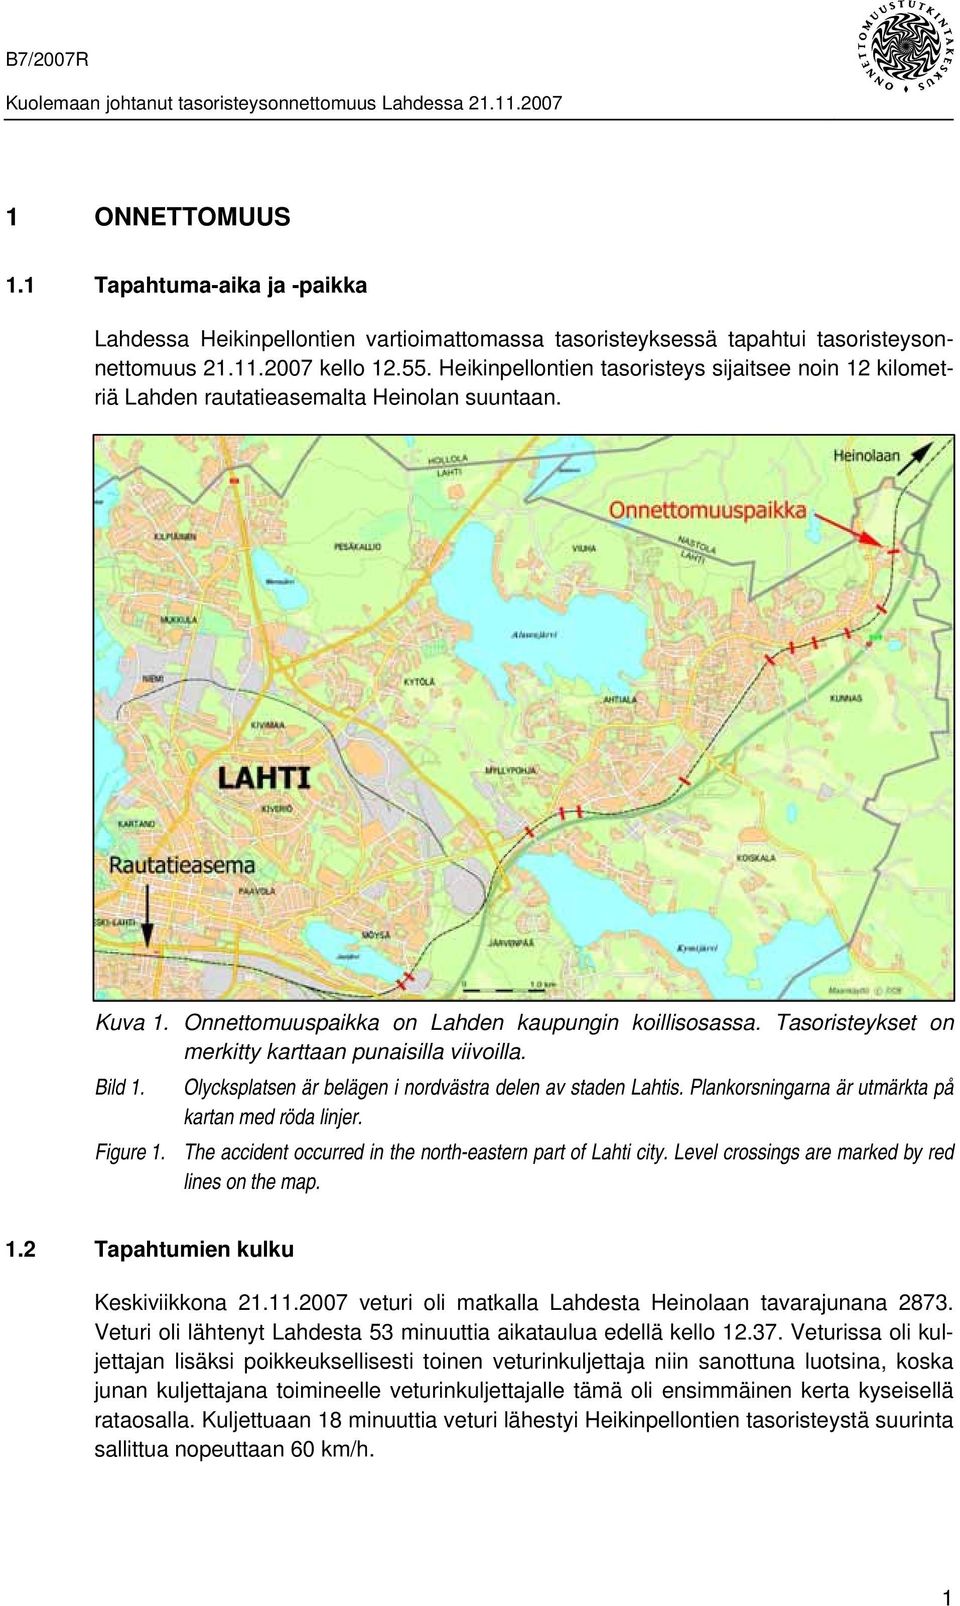 Tasoristeykset on merkitty karttaan punaisilla viivoilla. Bild 1. Olycksplatsen är belägen i nordvästra delen av staden Lahtis. Plankorsningarna är utmärkta på kartan med röda linjer. Figure 1.